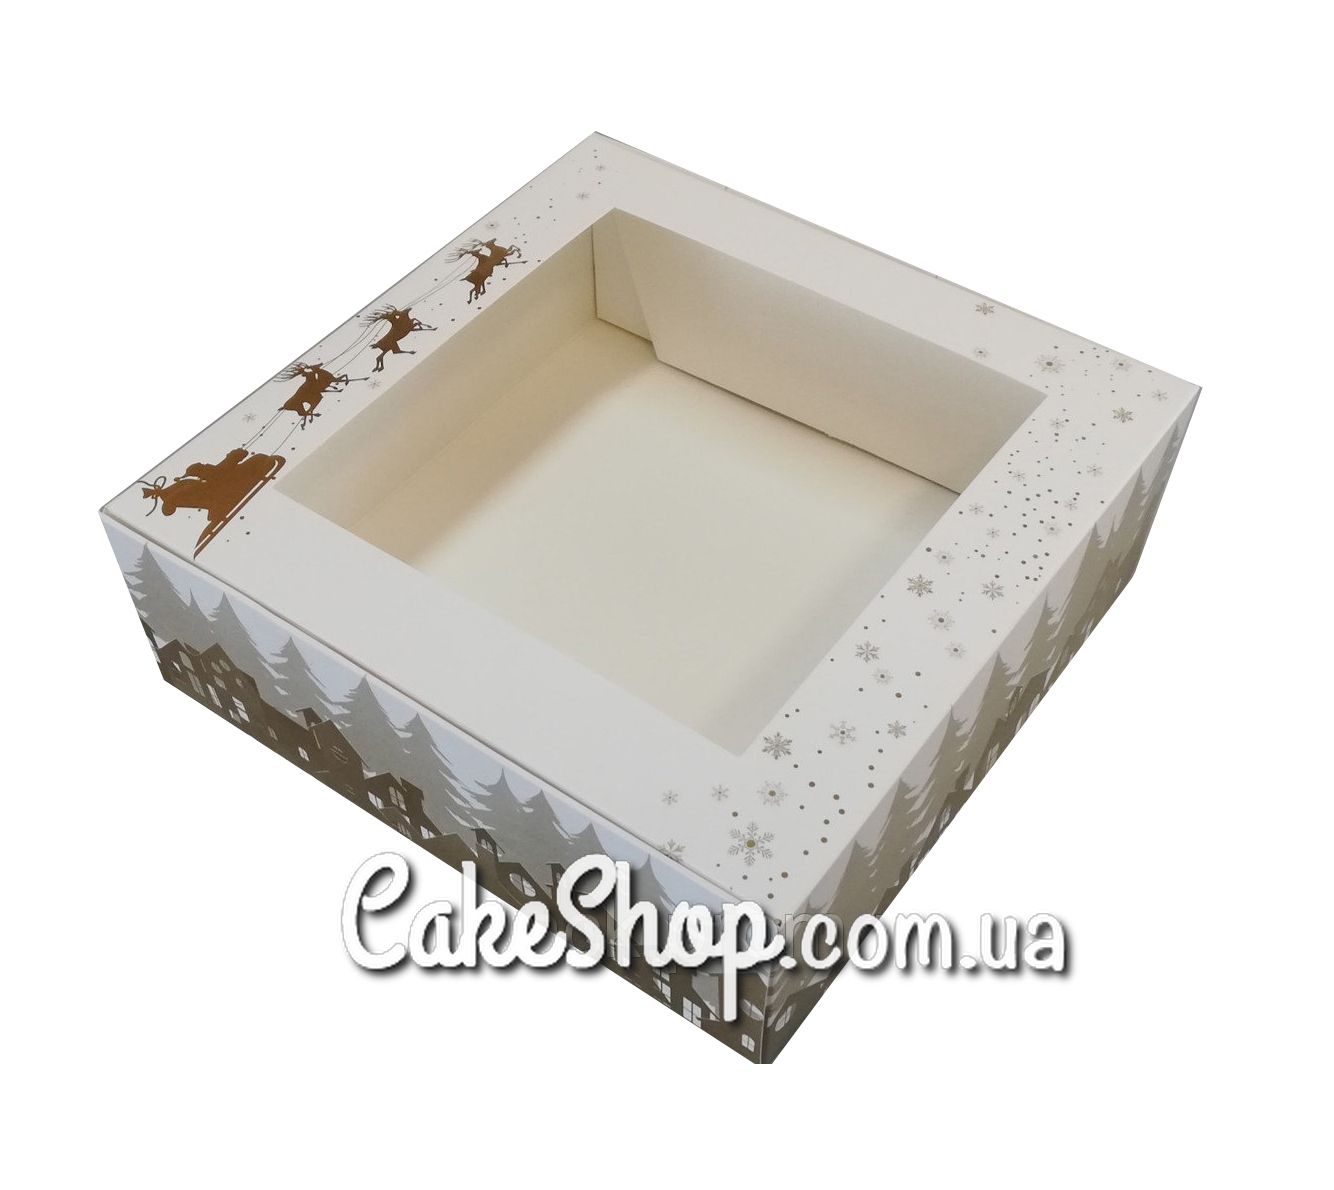 ⋗ Коробка для зефіру з вікном принт ЗОЛОТО, 20х20х7 см купити в Україні ➛ CakeShop.com.ua, фото